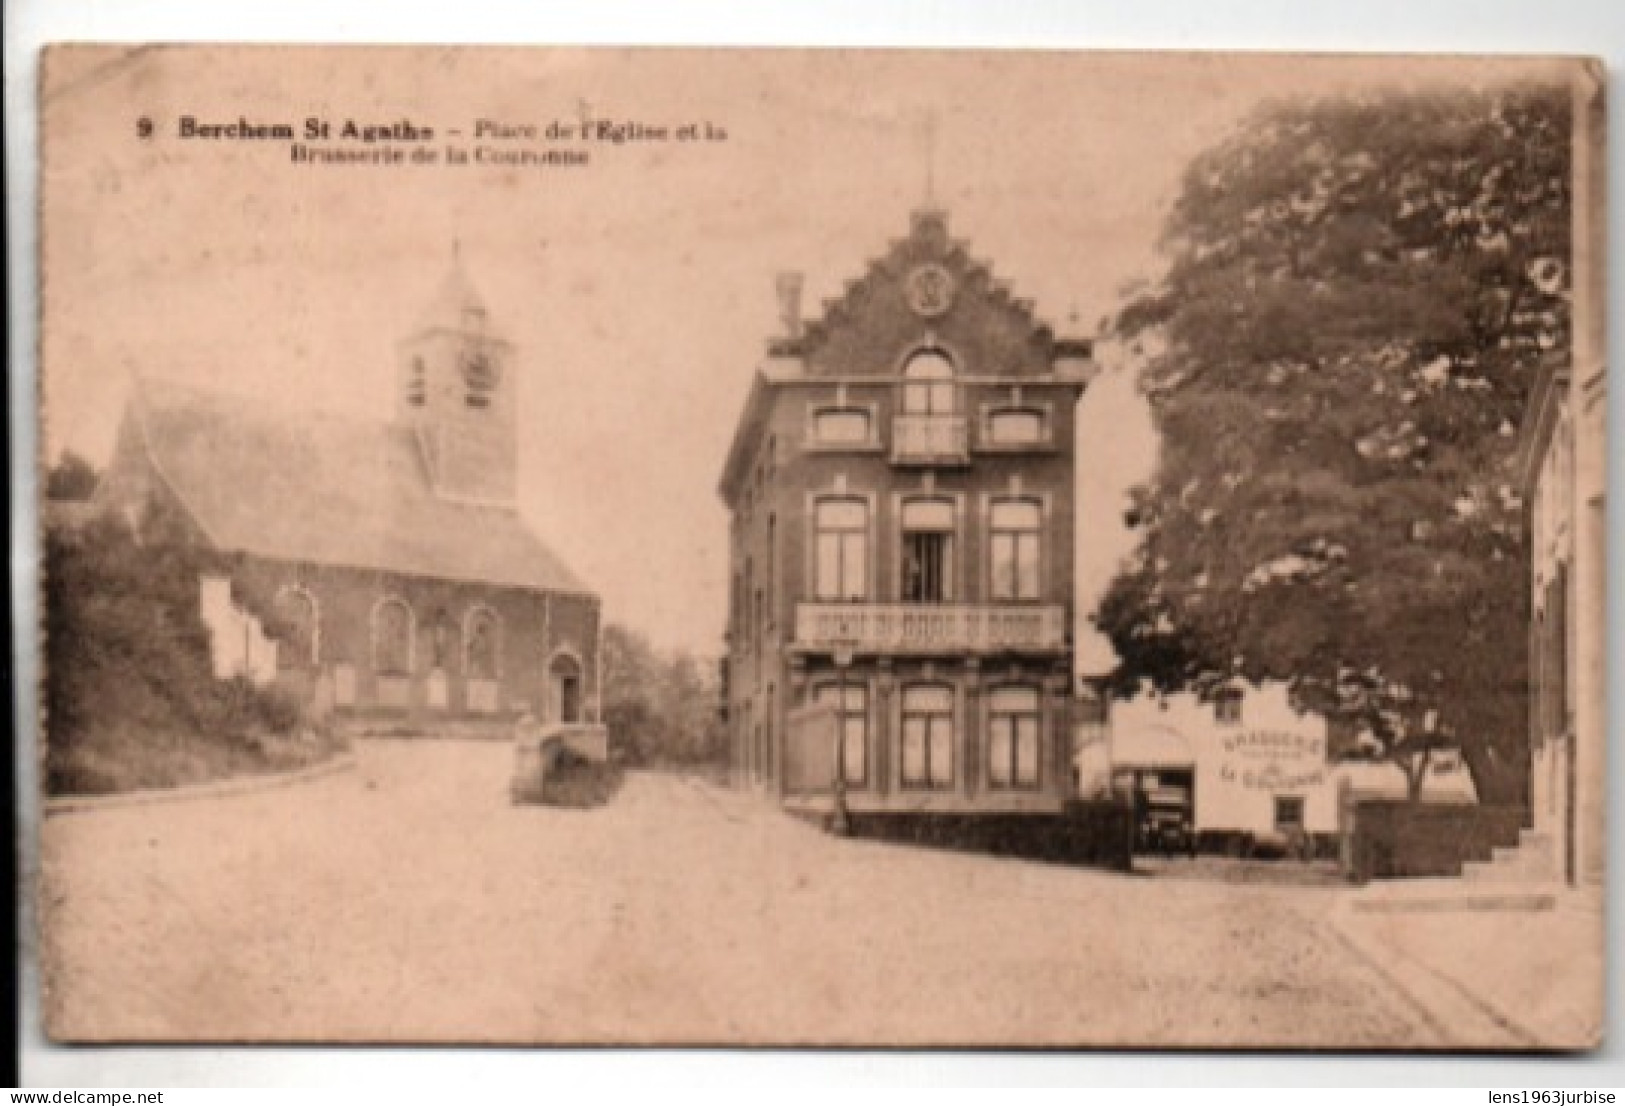 Berchem St Agathe - Place De L' Eglise Et La Brasserie De La Couronne - Cafés, Hoteles, Restaurantes